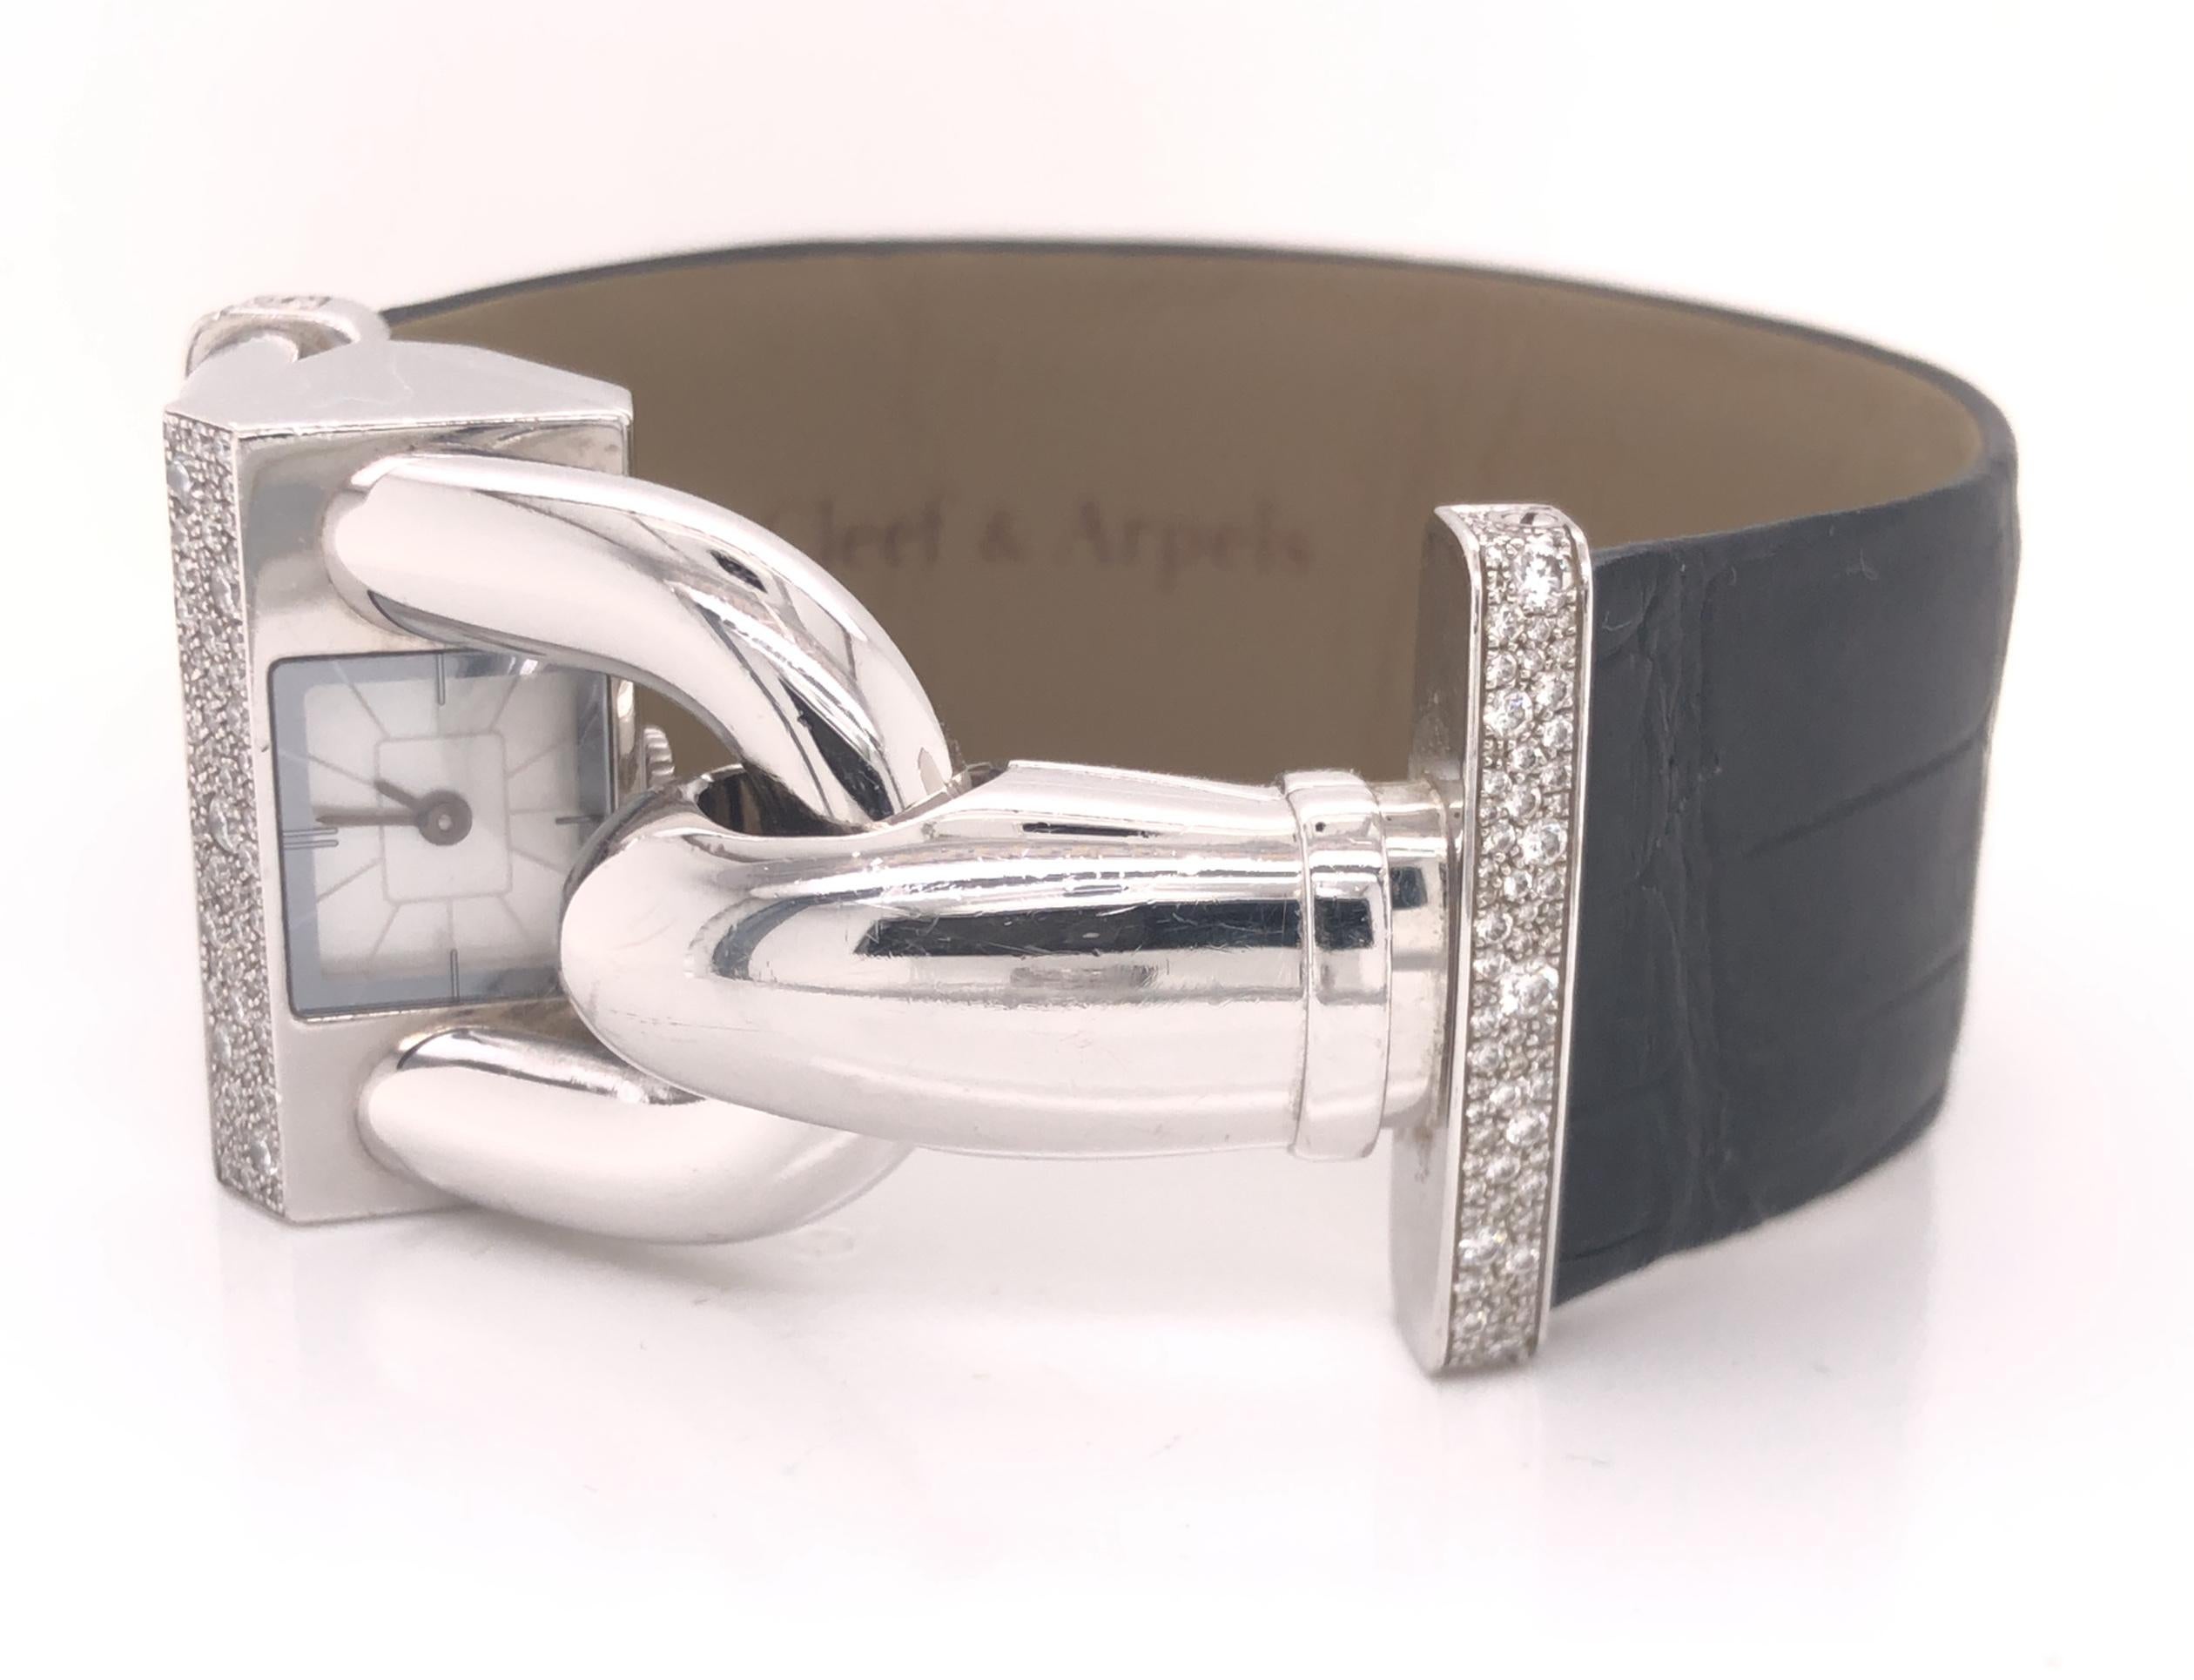 Die kühne und zeitlose Uhr Cadenas von Van Cleef & Arpels ist heute noch genauso aktuell wie bei ihrer ersten Kreation im Jahr 1935. Ihr unverwechselbares Design zeichnet sich durch ein abgewinkeltes Zifferblatt aus, das ein diskretes Ablesen der